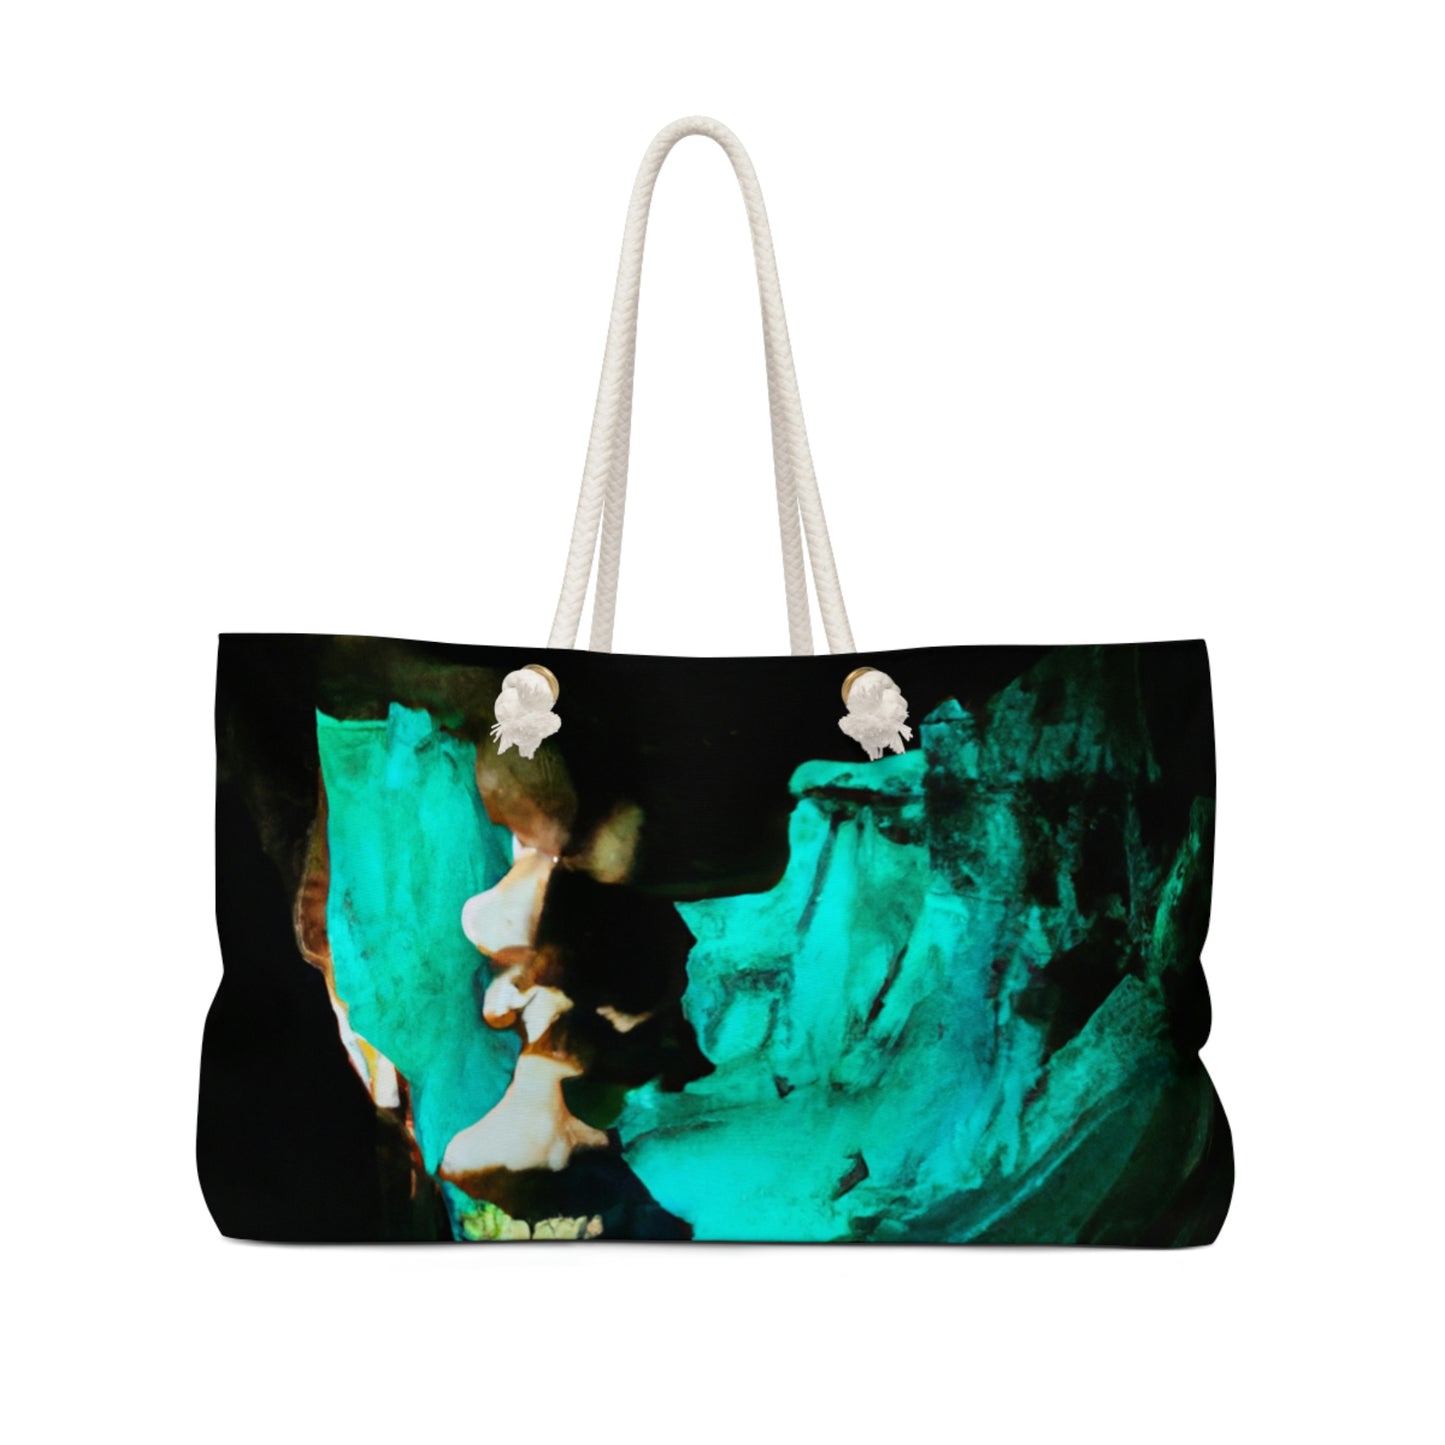 La reliquia reluciente de la cueva - La bolsa de fin de semana alienígena